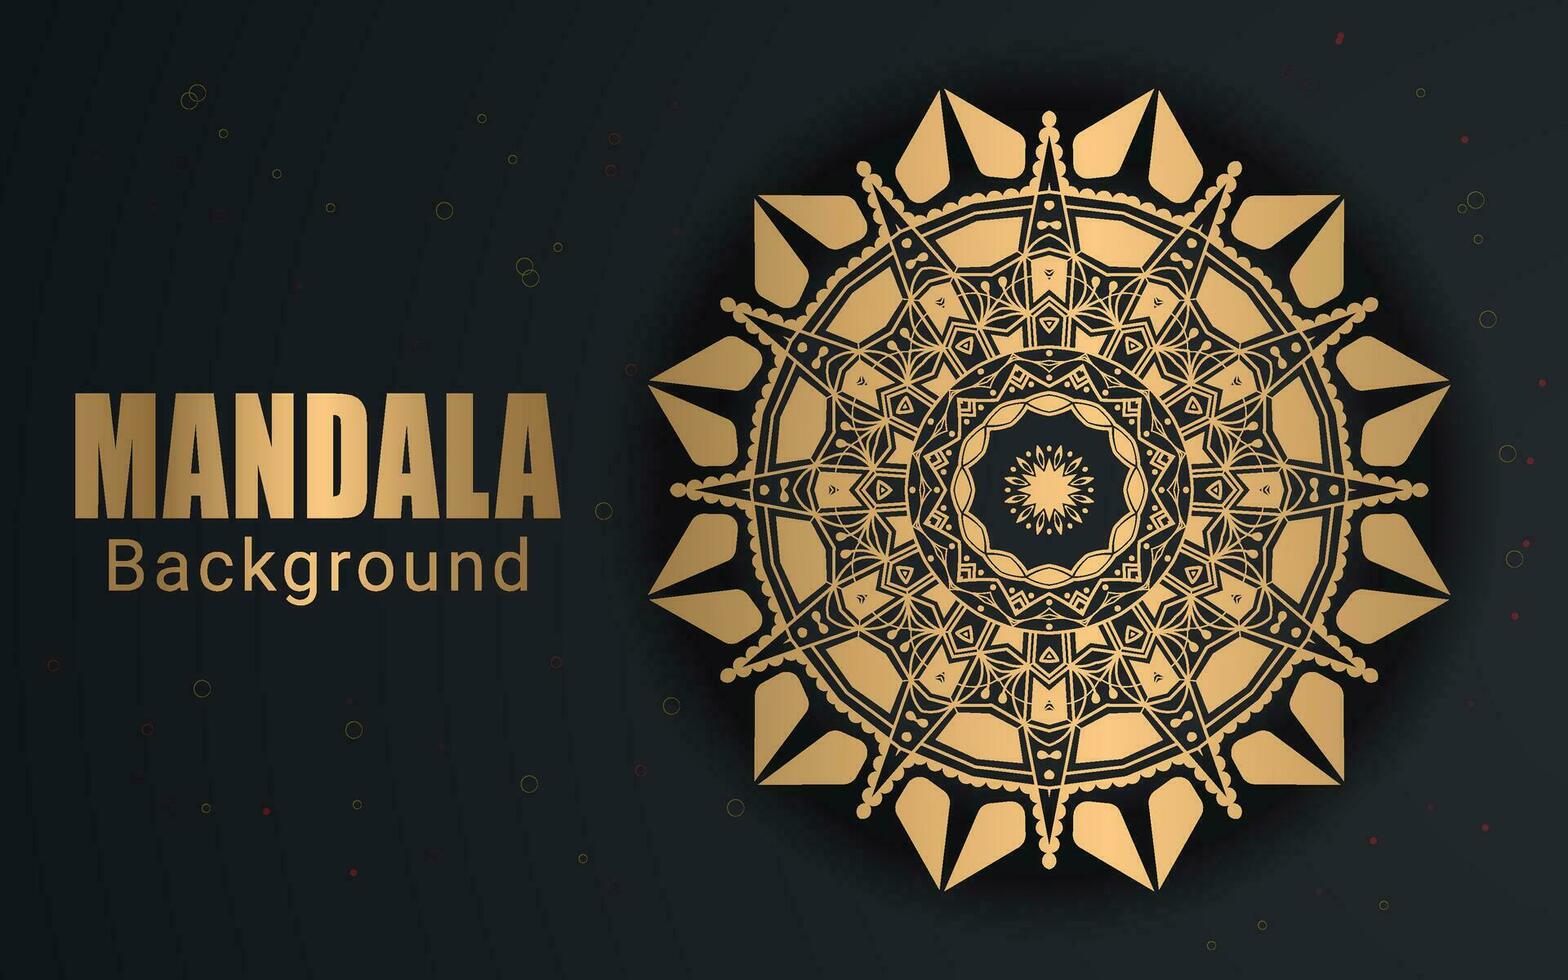 luxe creatief Islamitisch mandala achtergrond ontwerp of circulaire patroon in het formulier van mandala voor henna, mehndi, tatoeëren, decoratie. decoratief ornament in etnisch oosters stijl. kleur boek bladzijde. vector